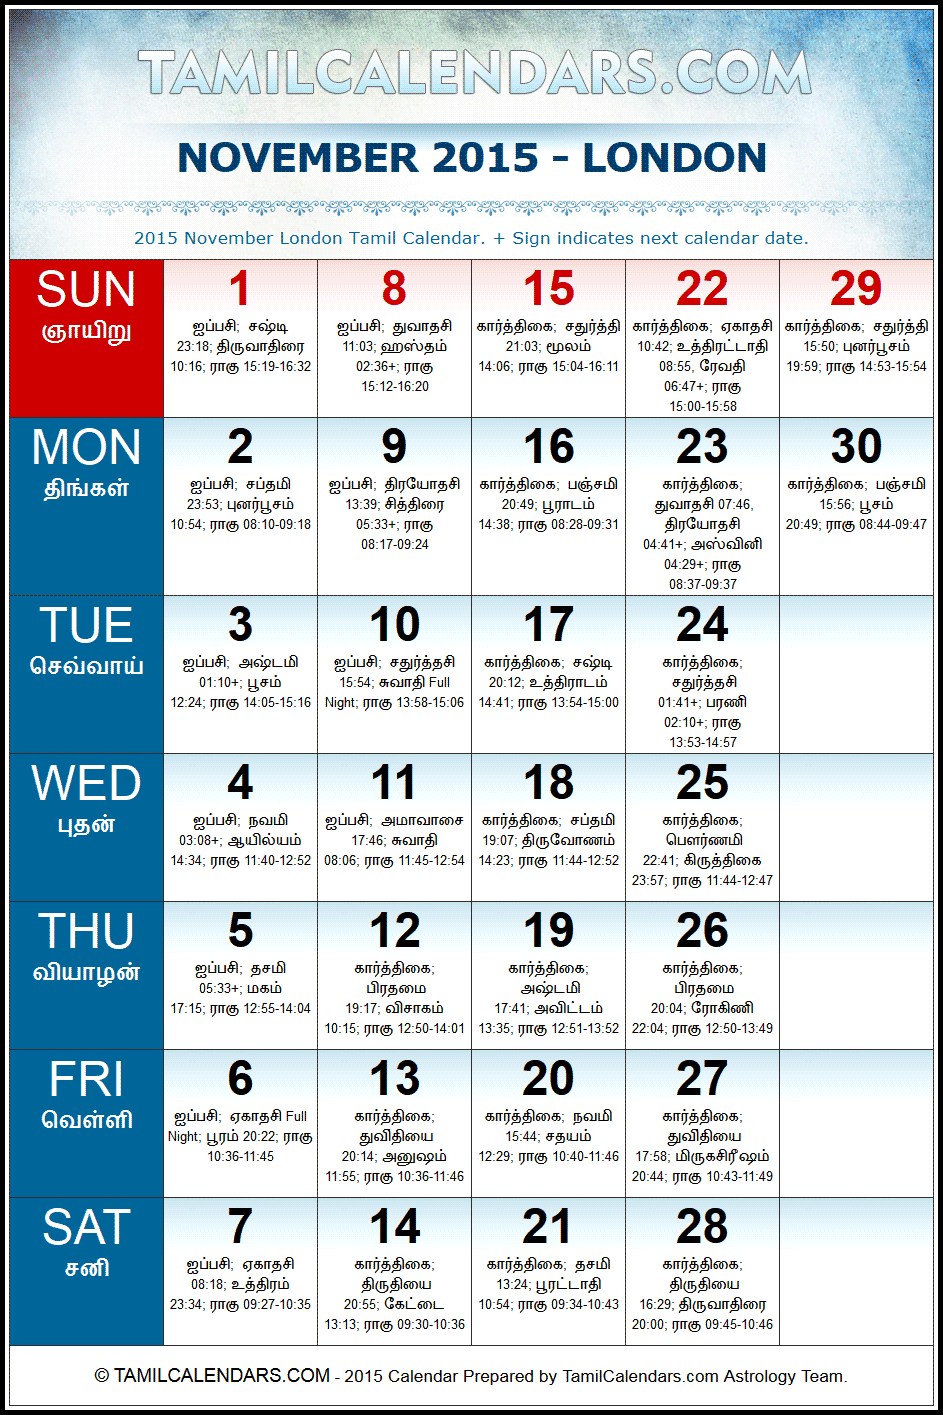 November 2015 London Tamil Calendar Download UK Tamil Calendars PDF